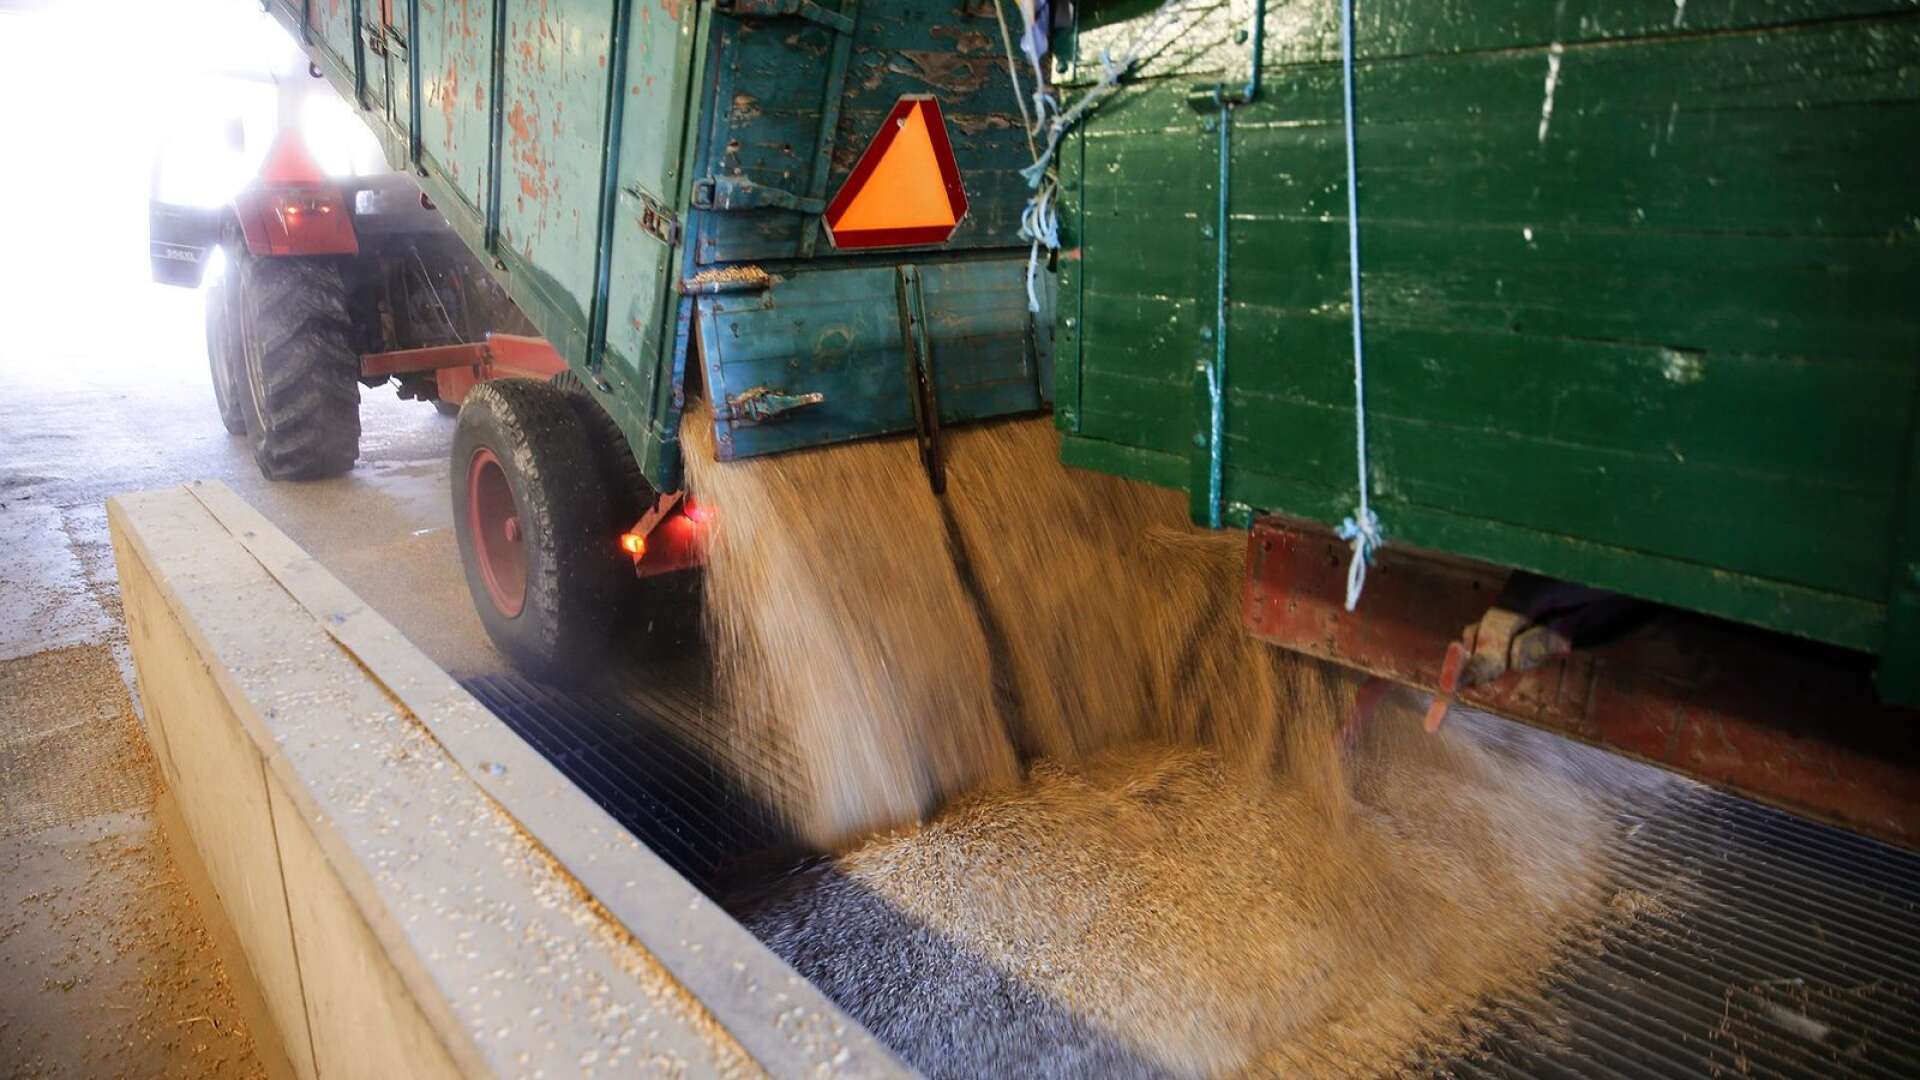 Totalt 145 000 ton spannmål har levererats till Lantmännen i Lidköping. Årets skörd sticker inte ut i mängd, däremot i kvalité. 